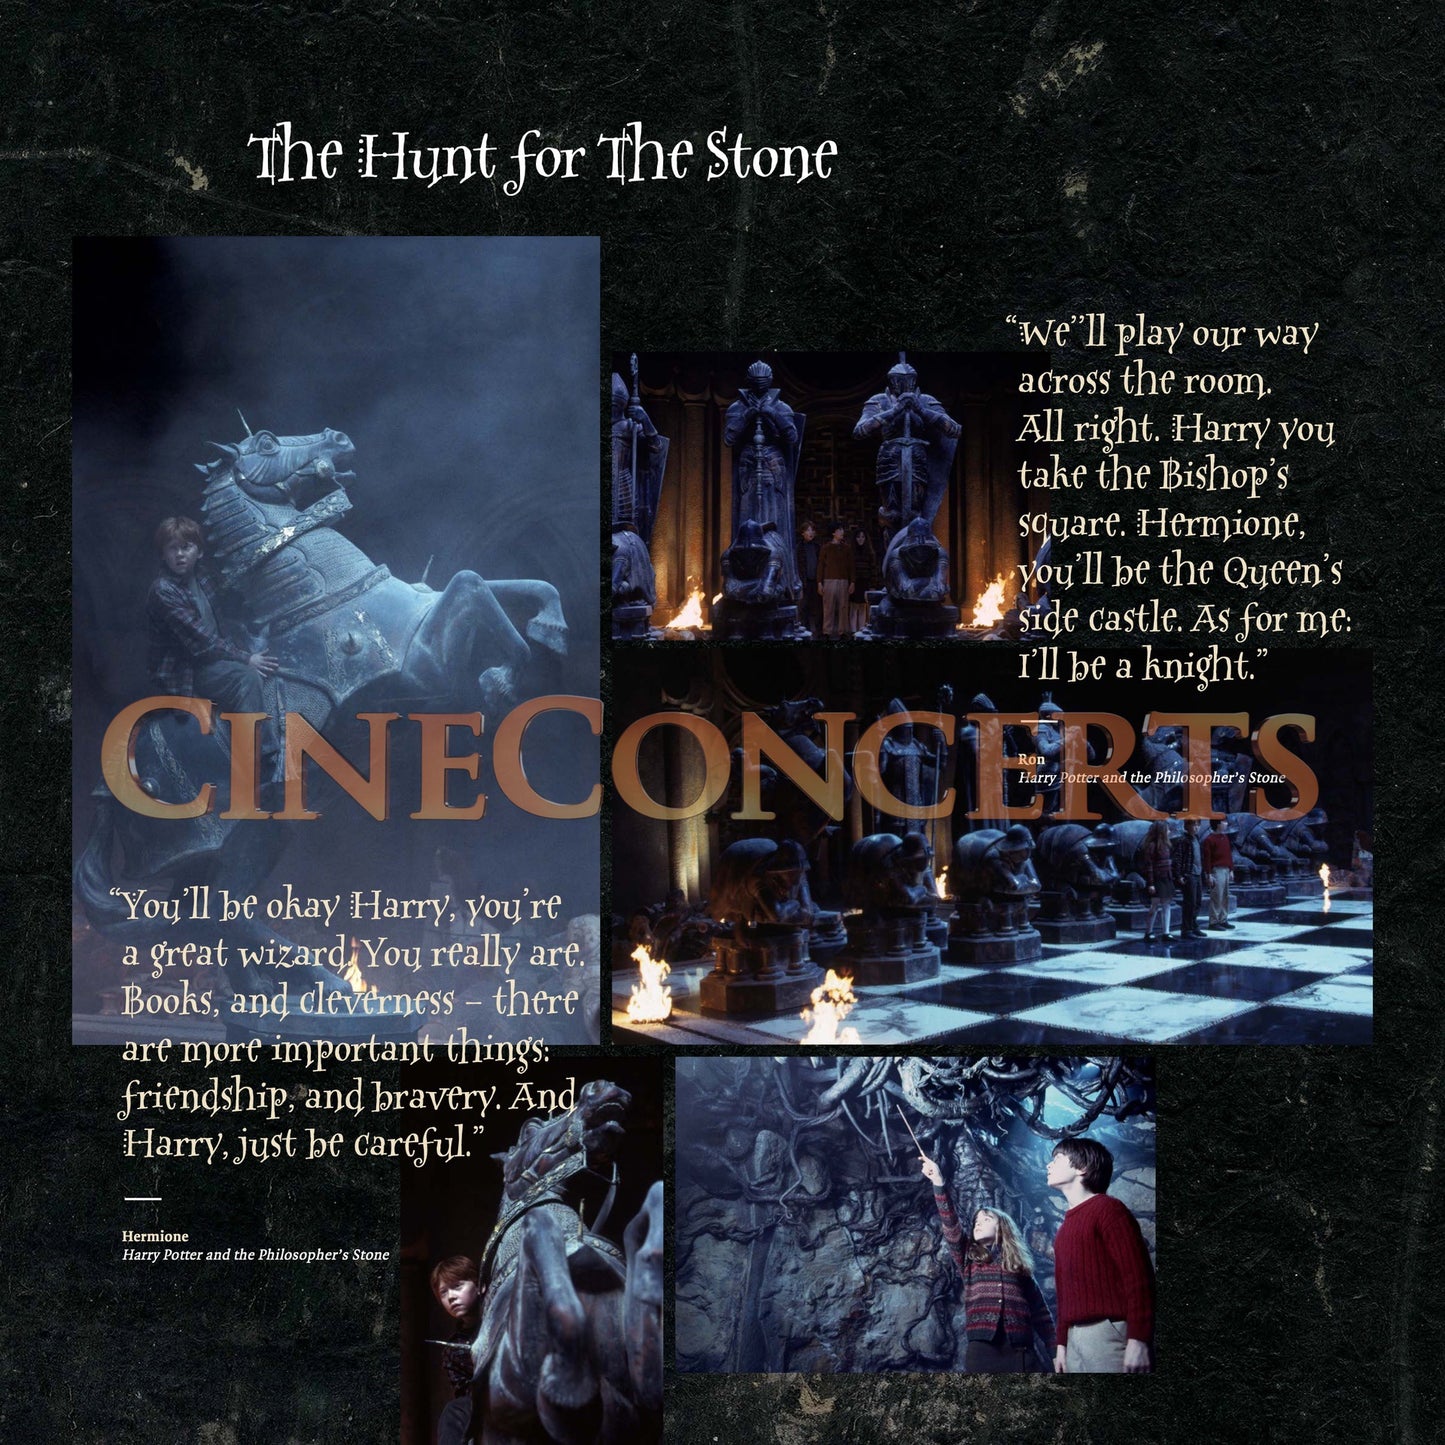 Harry Potter und der Stein der Weisen in Concert Souvenir Program